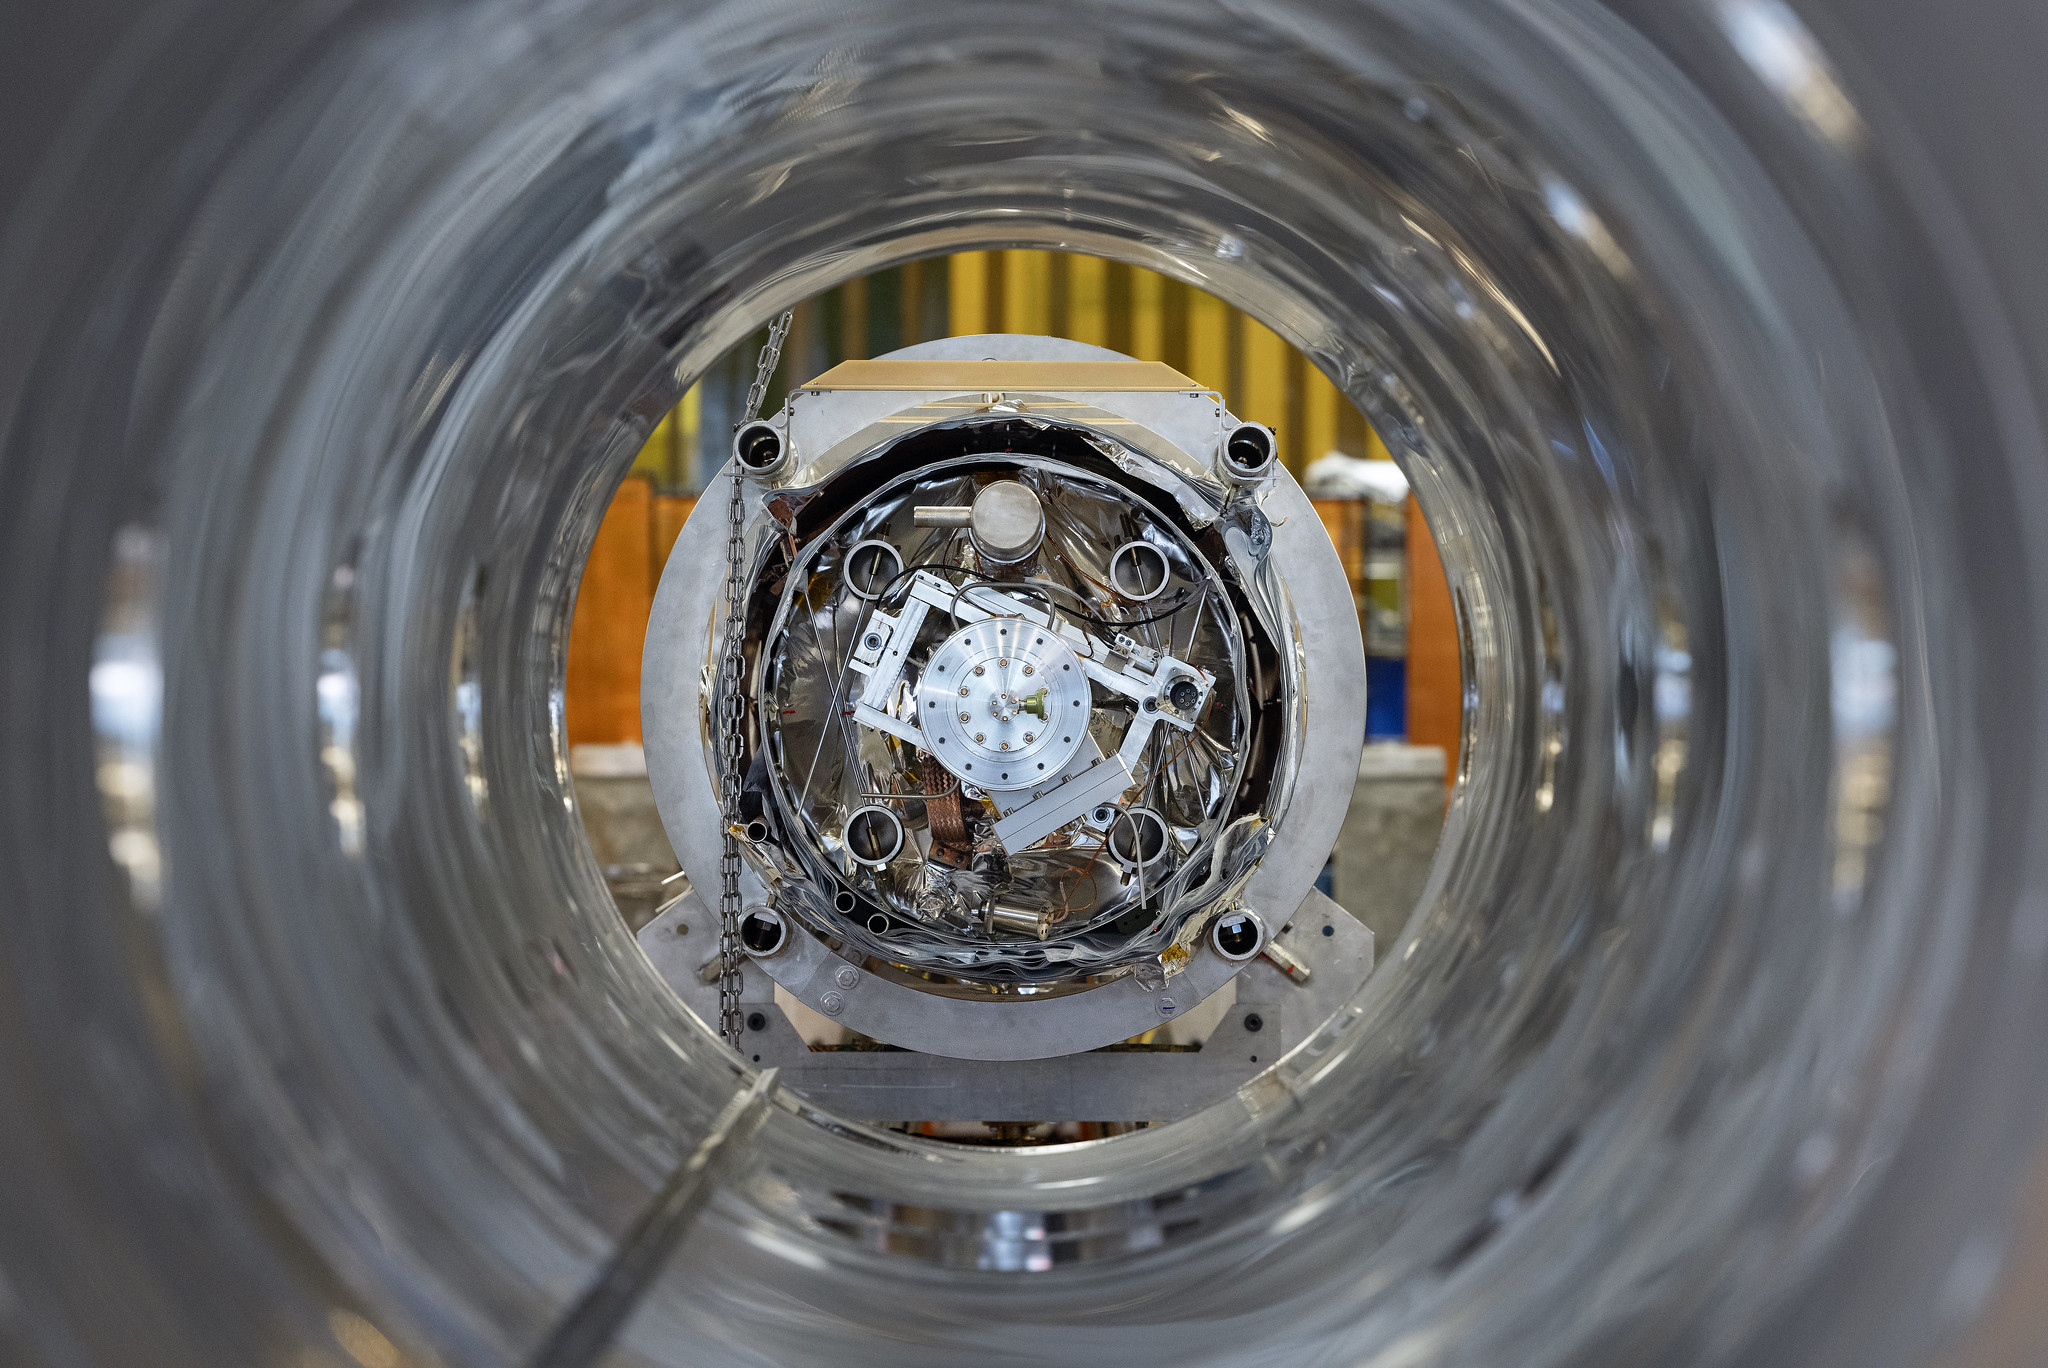 با نگاه کردن به بشکه خالی یک کرایومدول، اجزای داخلی فلزی نقره ای قابل مشاهده هستند که در آزمایشگاه تست SRF در آزمایشگاه جفرسون در نیوپورت نیوز مشاهده شده است.